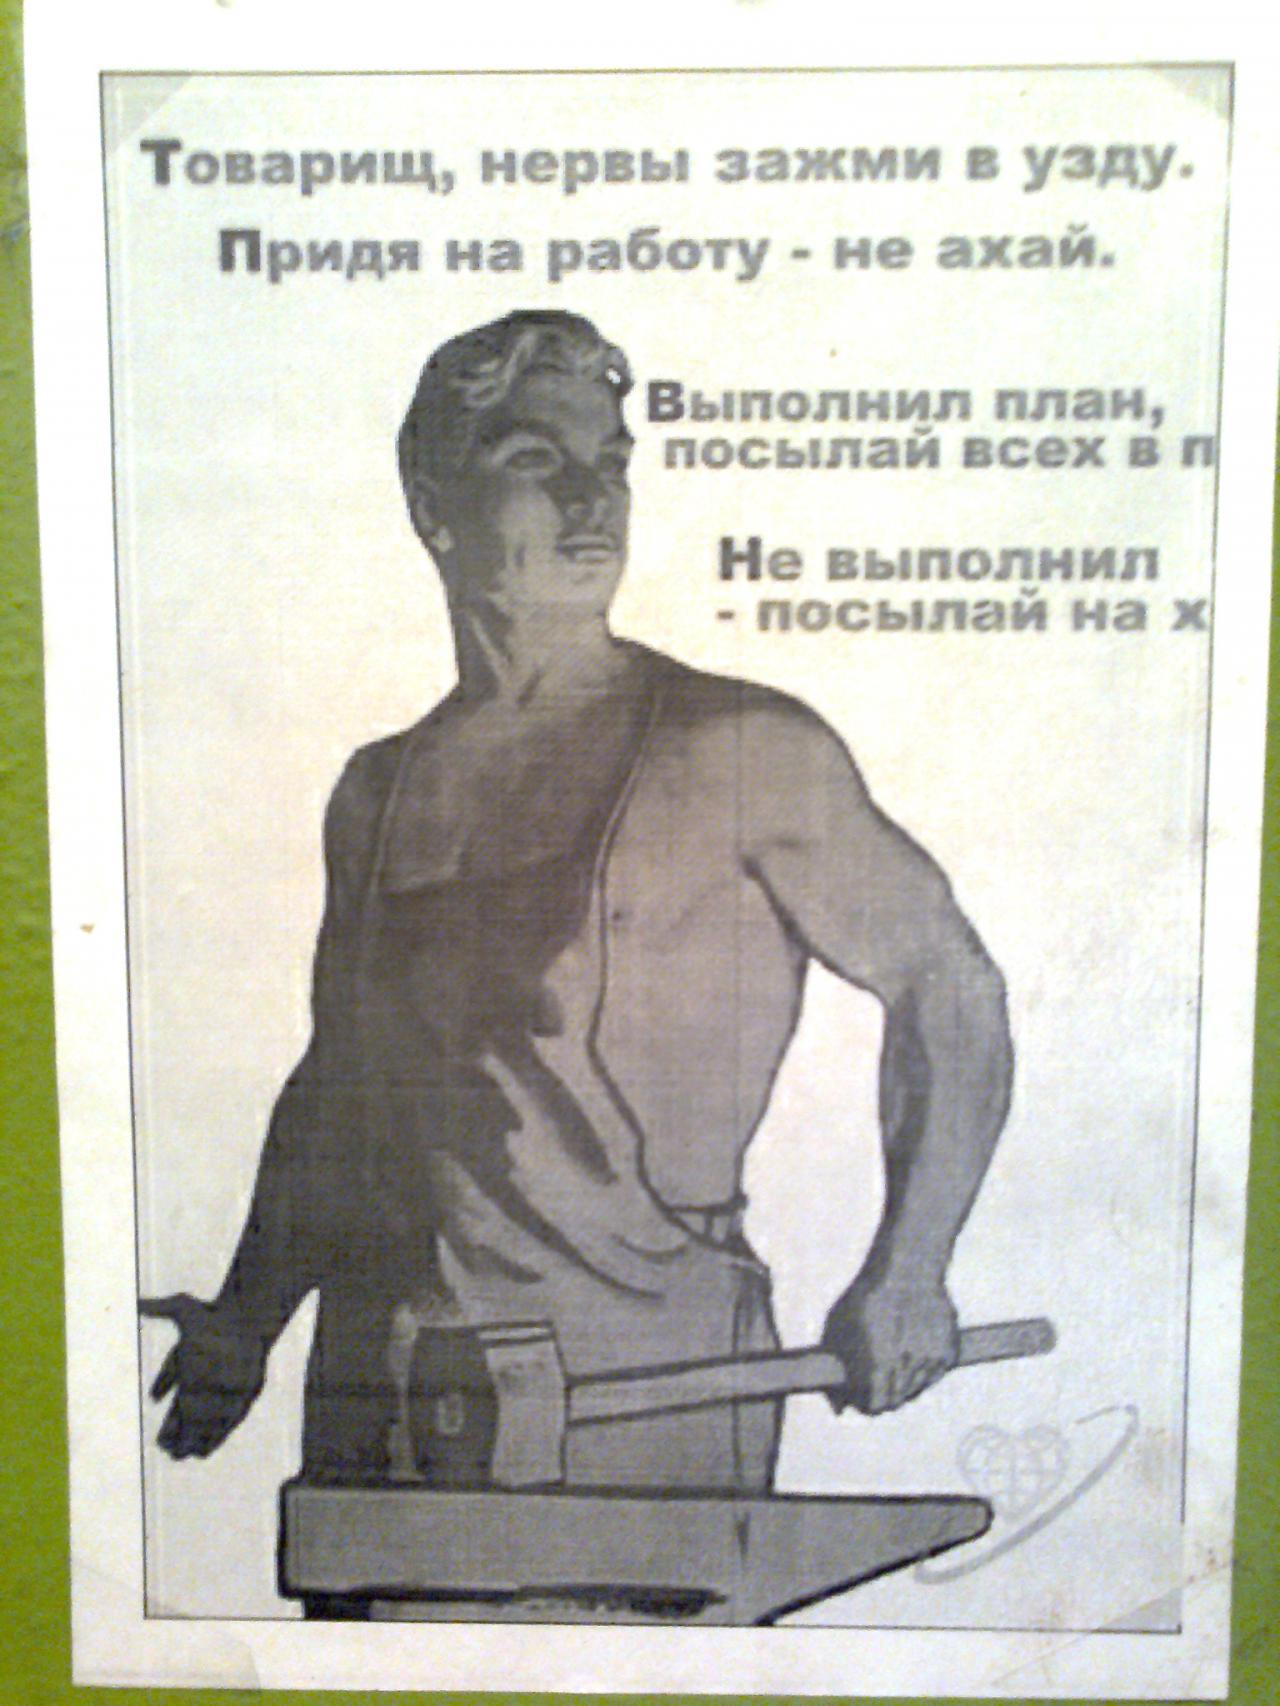 И не ахай жизнь держи. Веселые плакаты. Прикольные плакаты про работу. Шуточные плакаты. Прикольные советские плакаты.